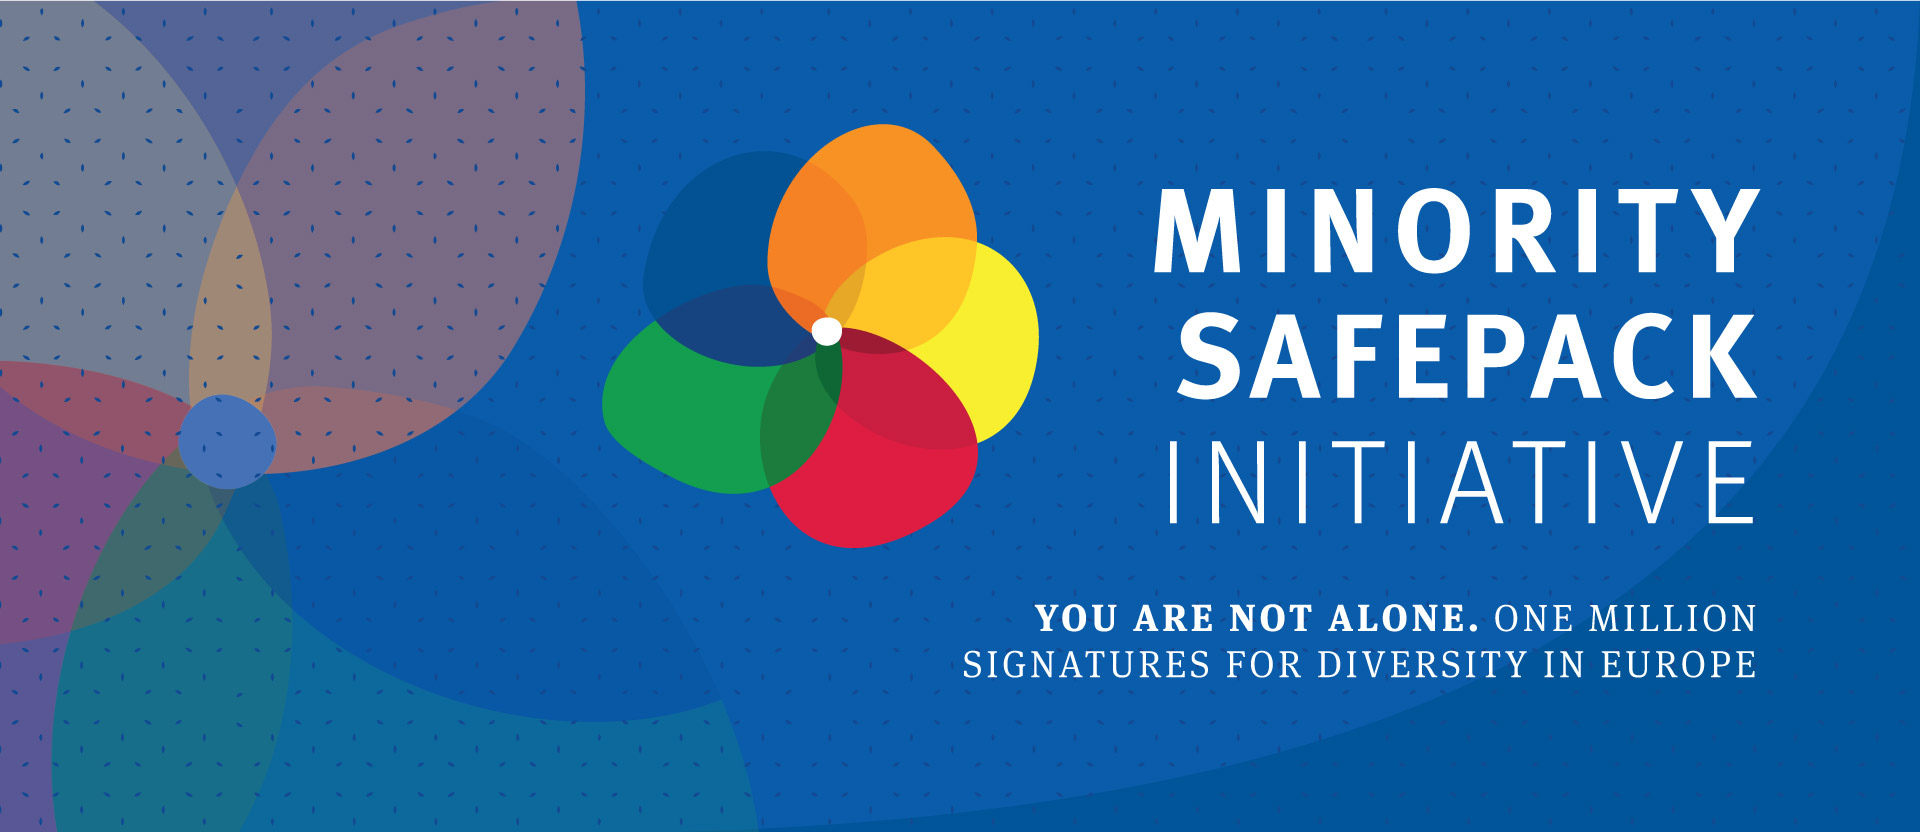 EFHR organizes the initiative “Minority SafePack”